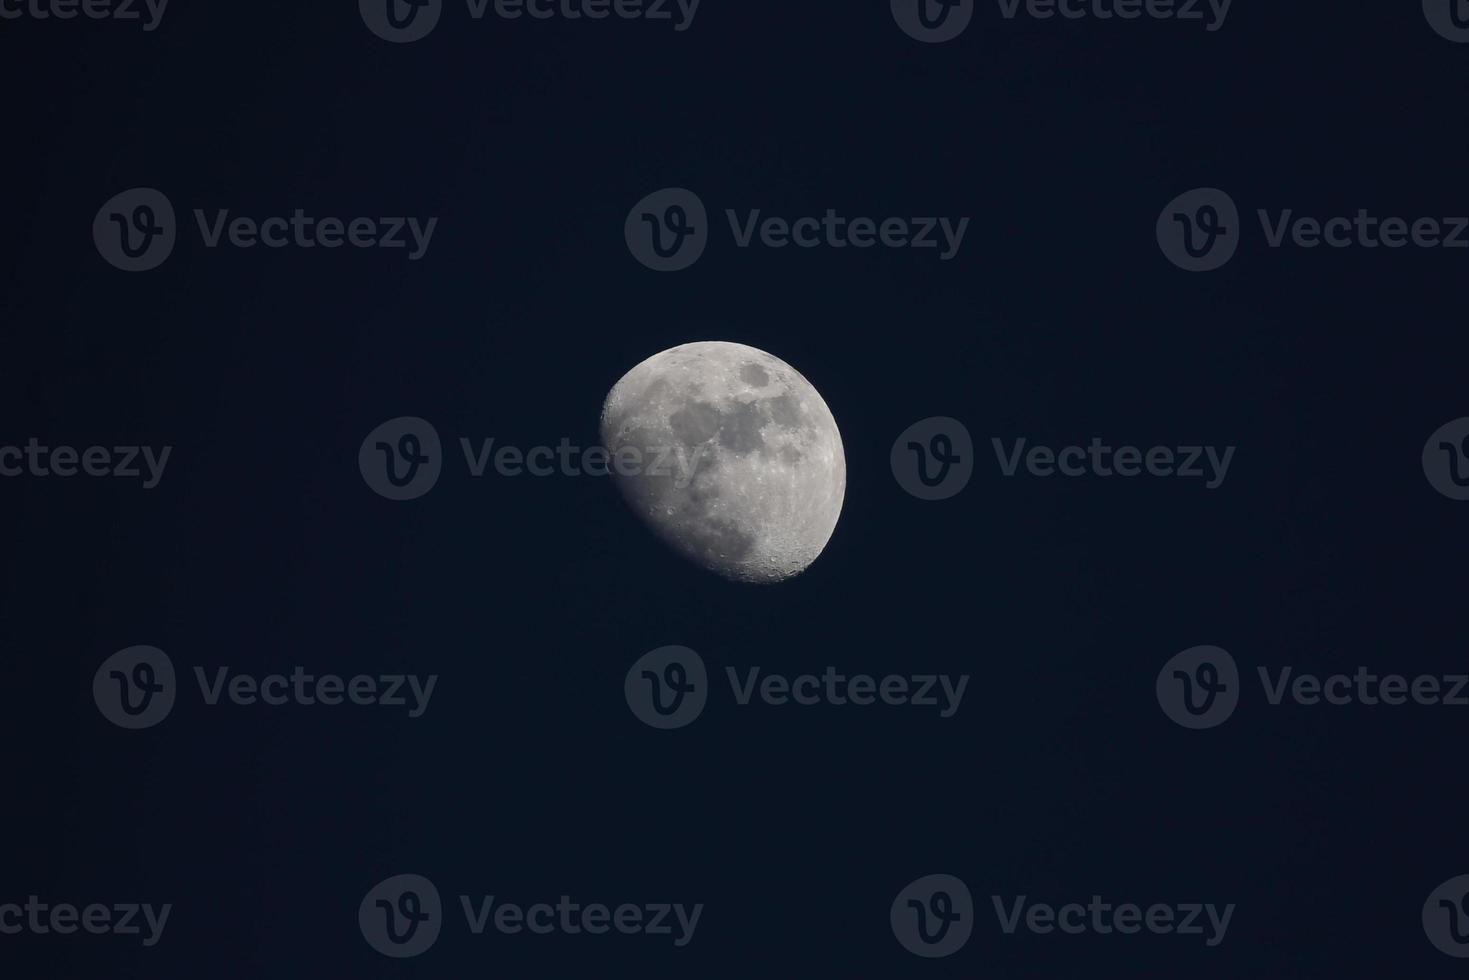 fullmåne på natten foto